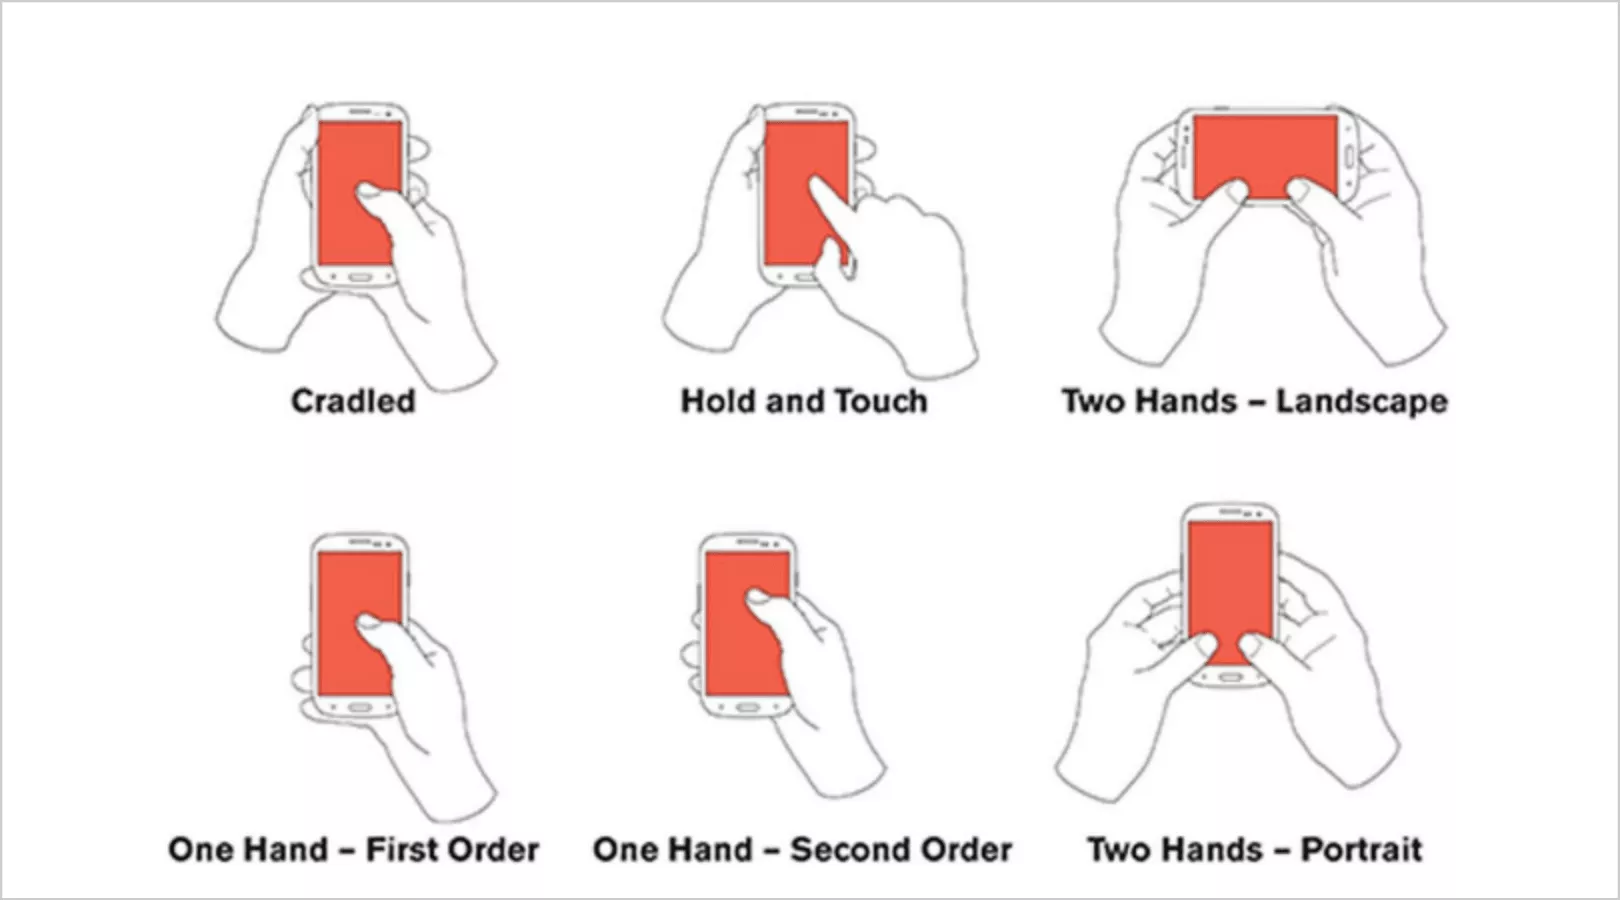 există de fapt șase moduri în care utilizatorii își țin telefoanele